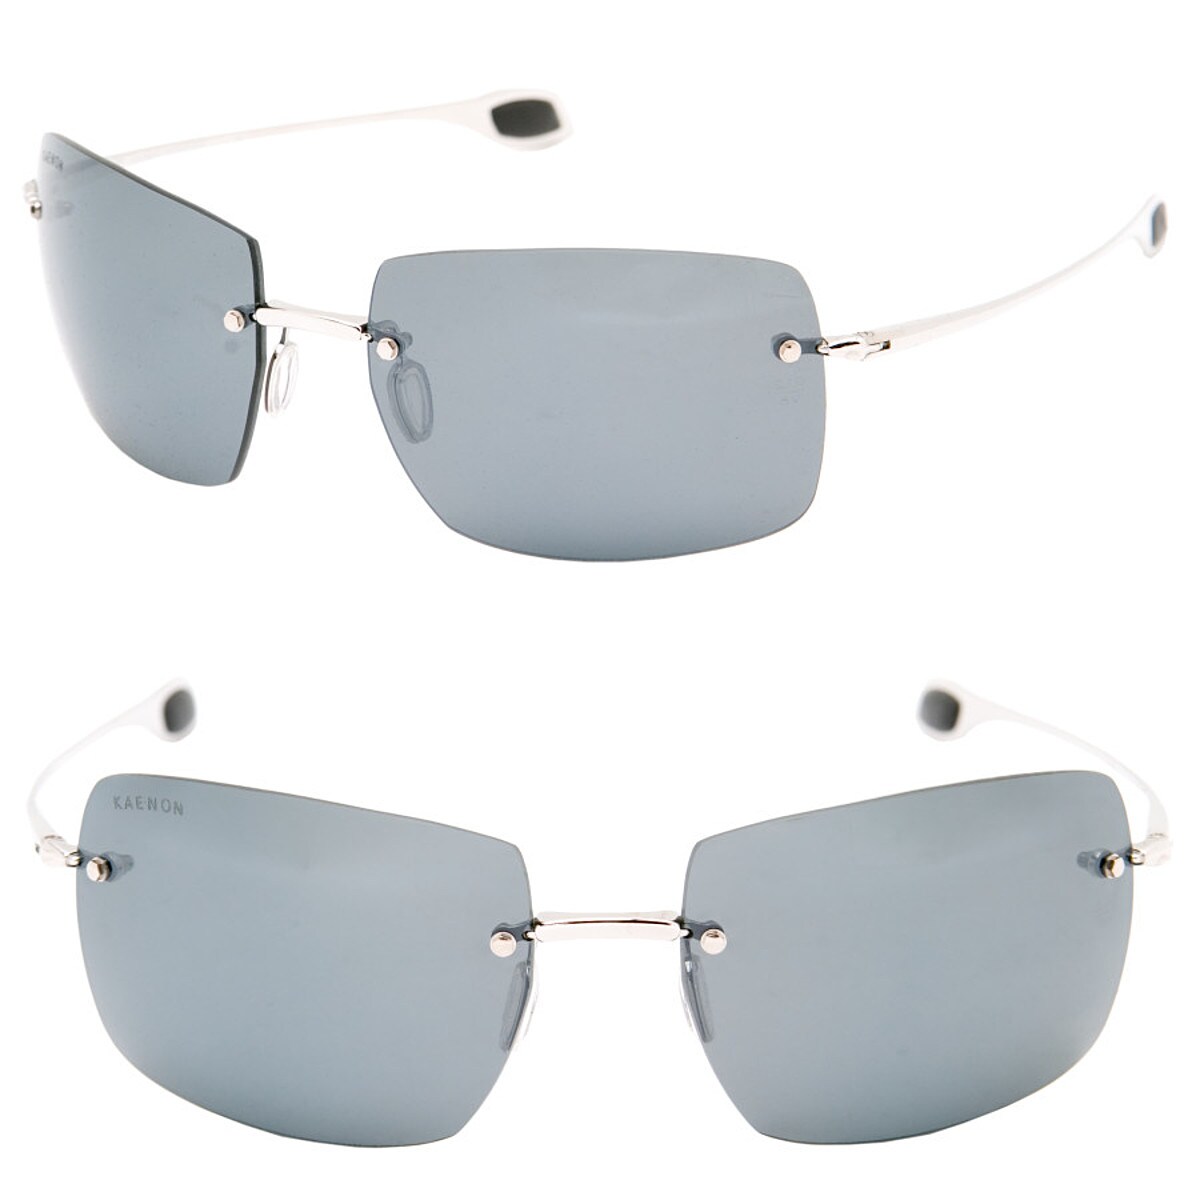 Kaenon V8 Sunglasses - Polarized - Accessories